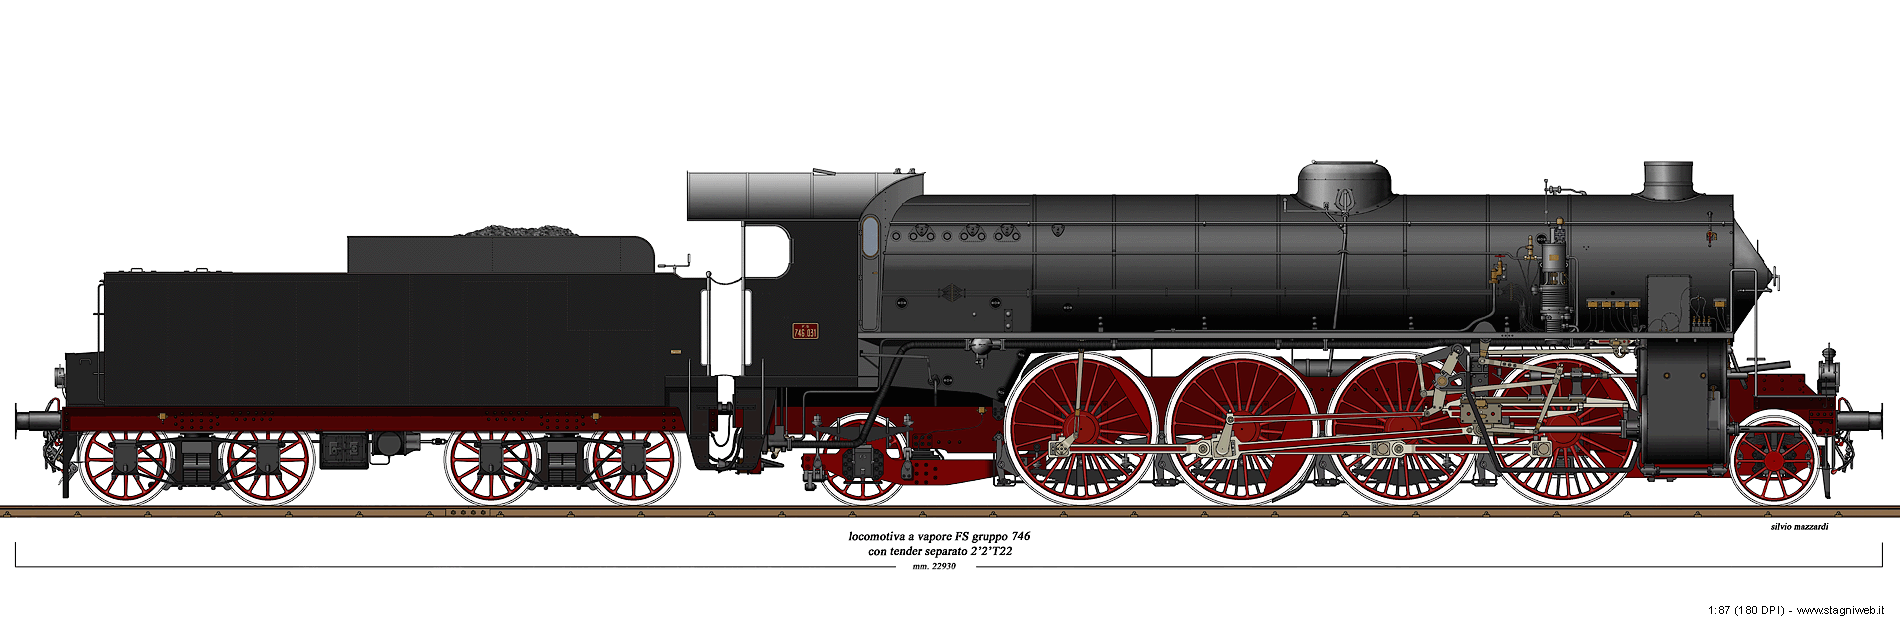 Locomotive a vapore con tender separato - Gr. 746 Walschaerts